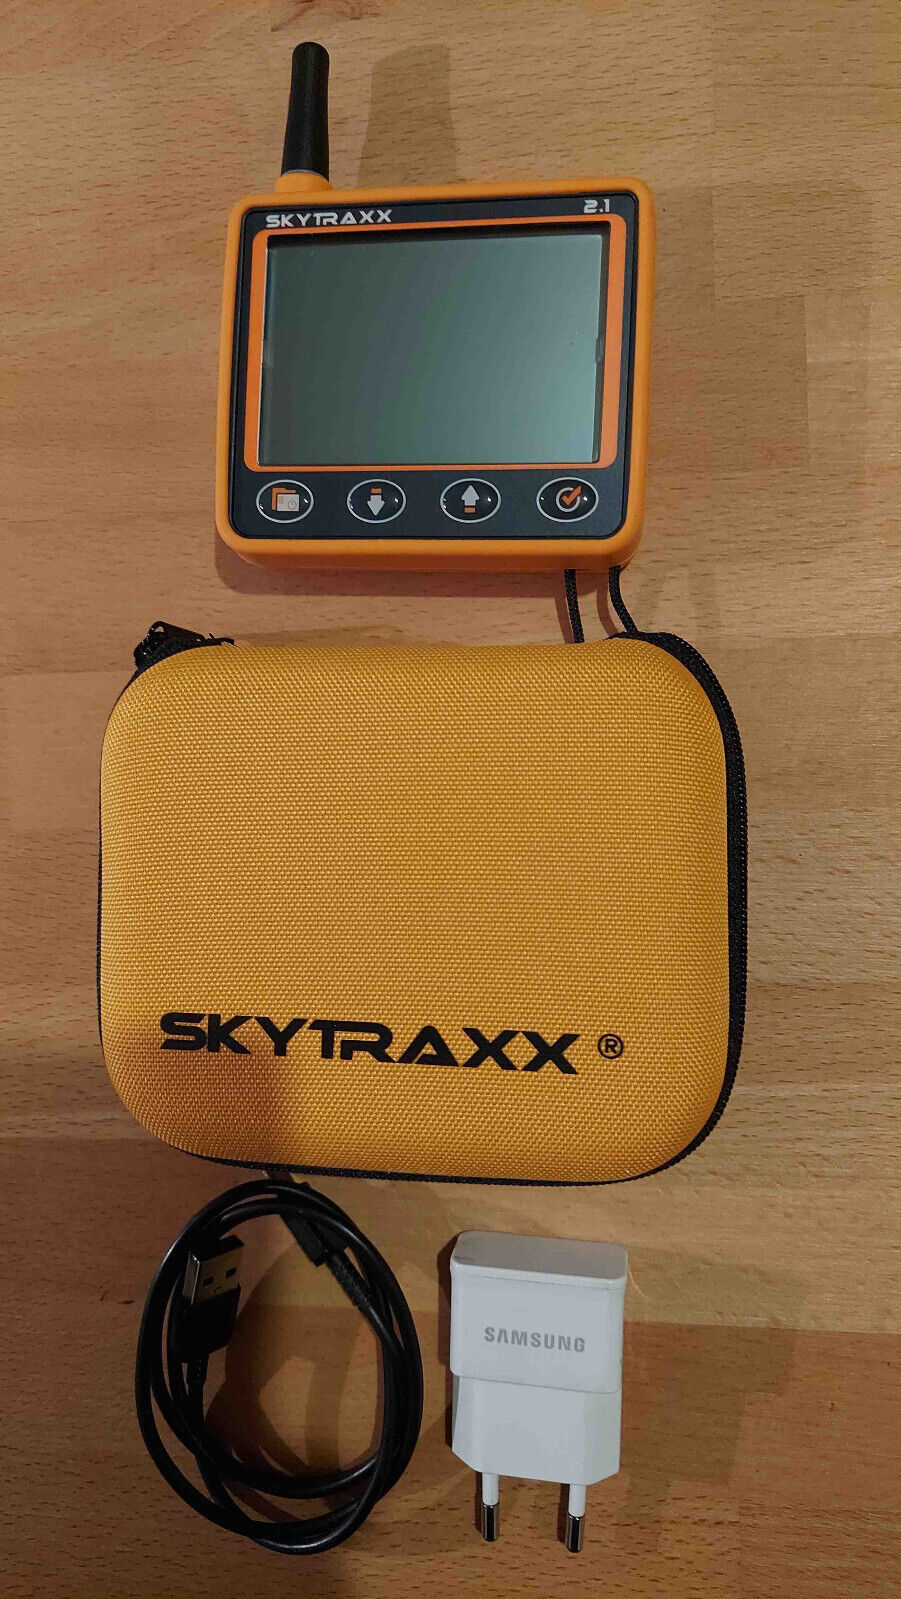 Vario Skytraxx 2.1 mit FANETFLARM inkl. Schutzhlle, Kabel und Beinhalterung Autoteile